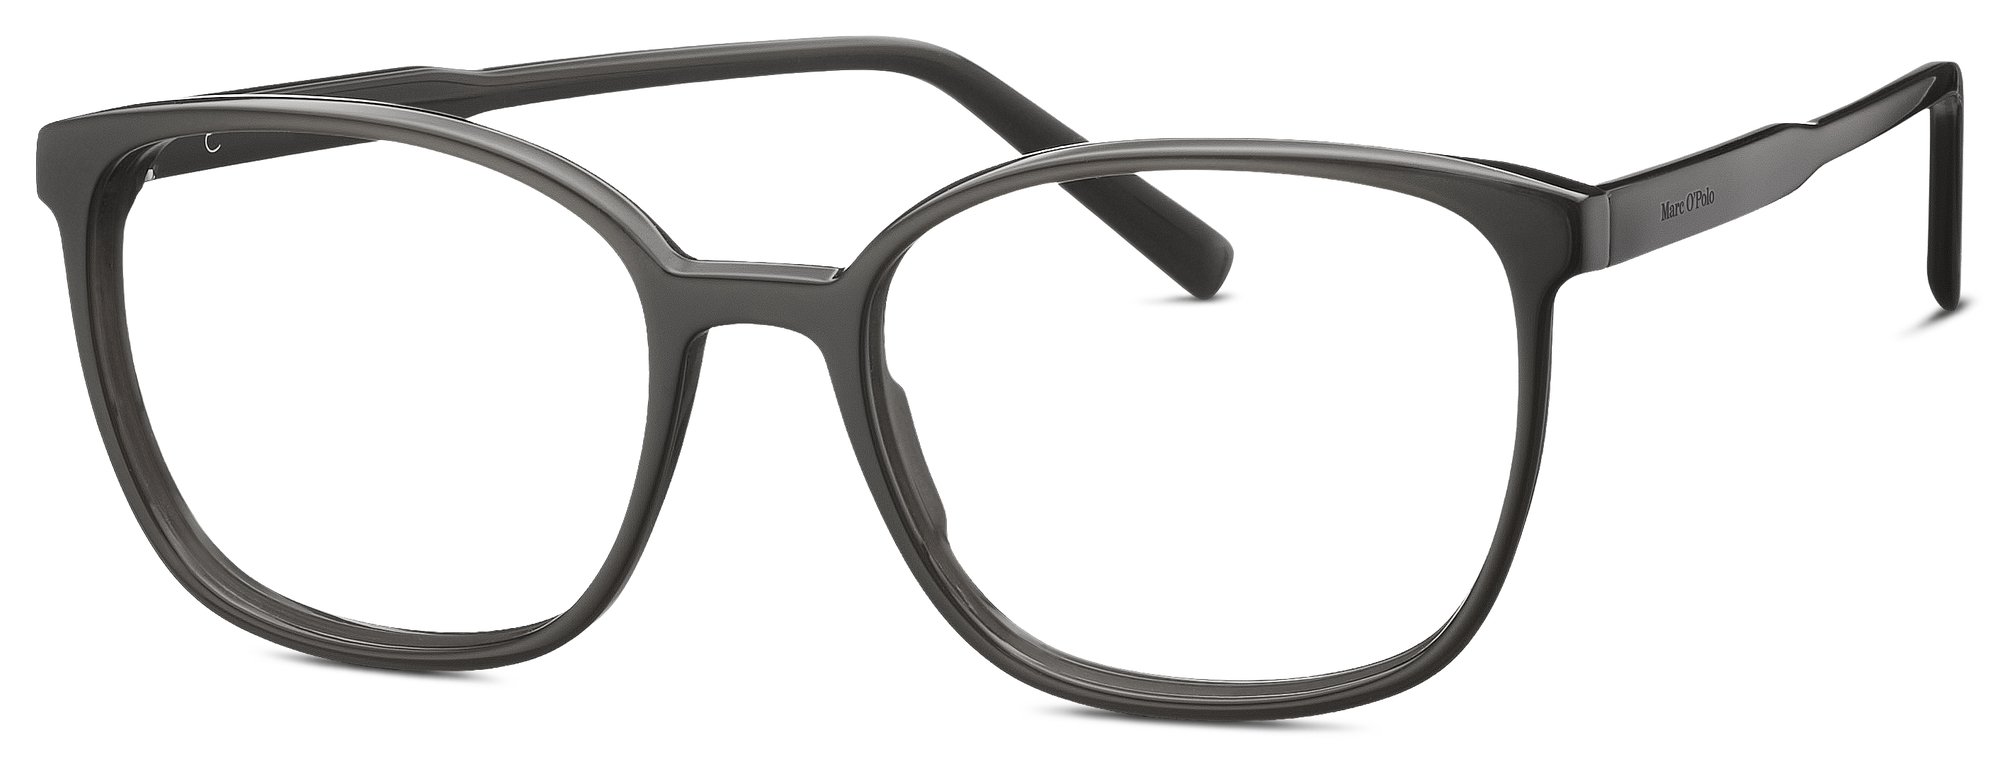 Das Bild zeigt die Korrektionsbrille 503207 30 von der Marke Marc O‘Polo in grau.